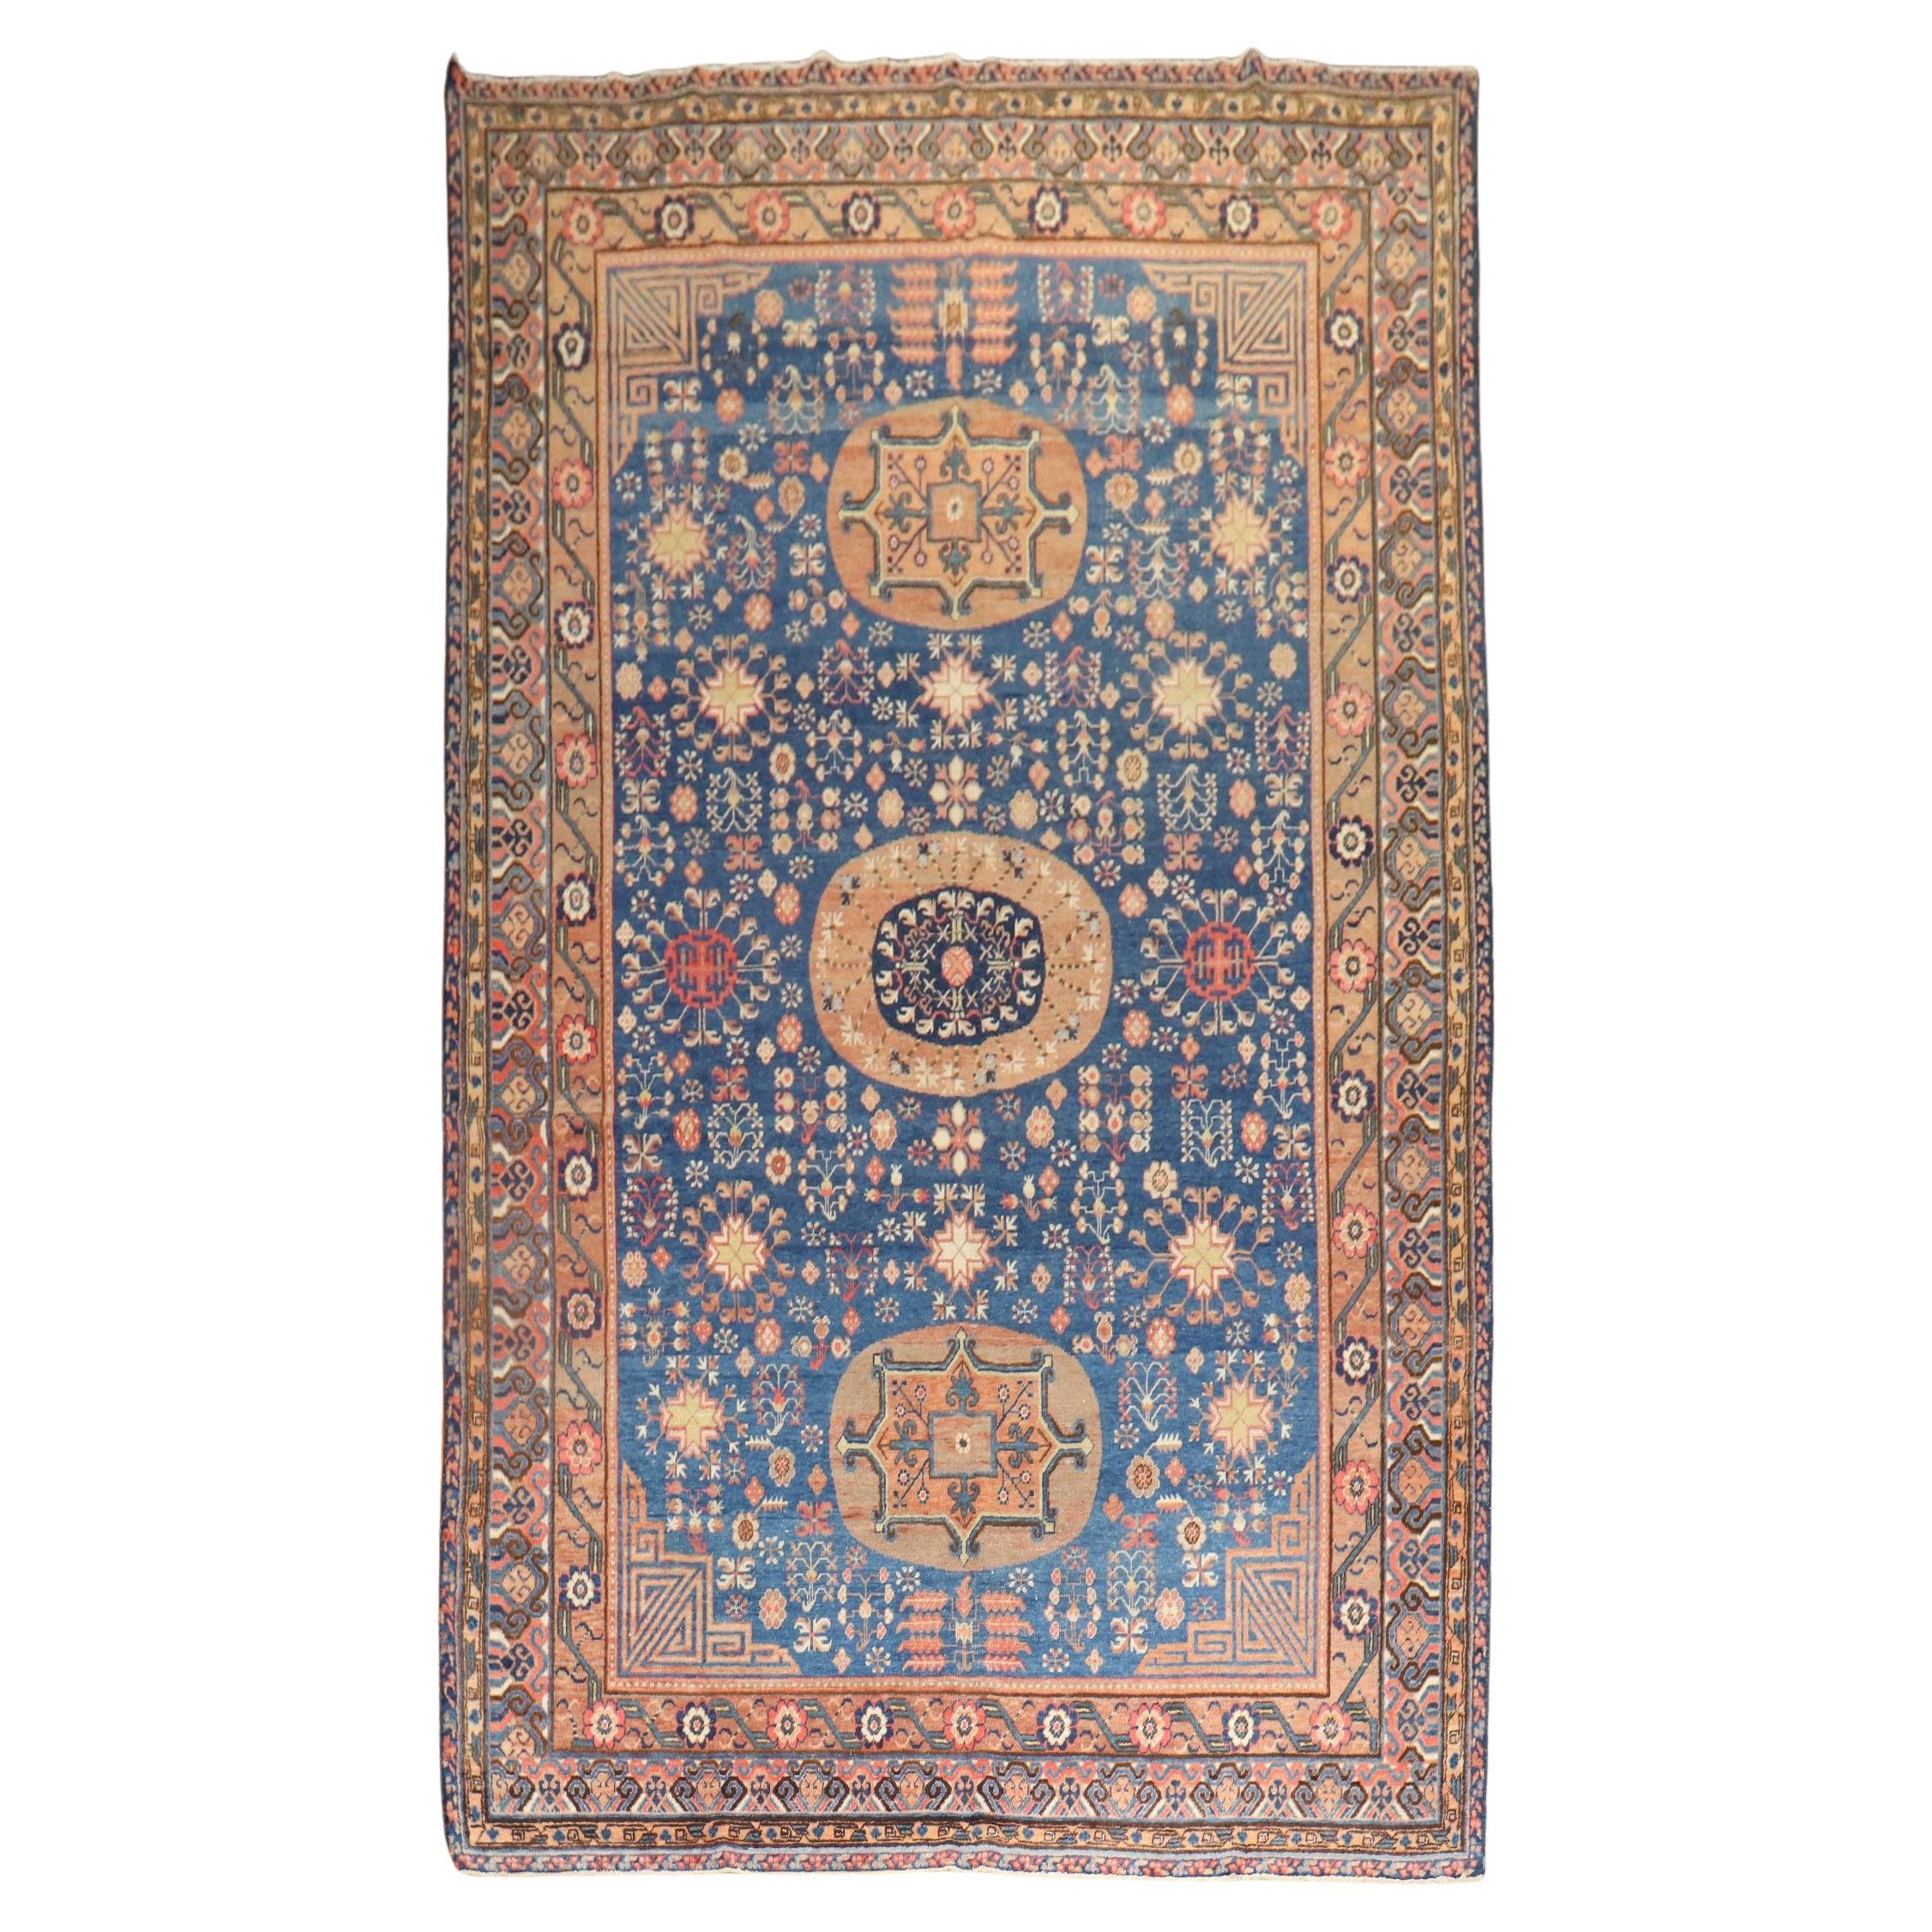 Blauer antiker Khotan-Galerie-Teppich aus dem 20. Jahrhundert